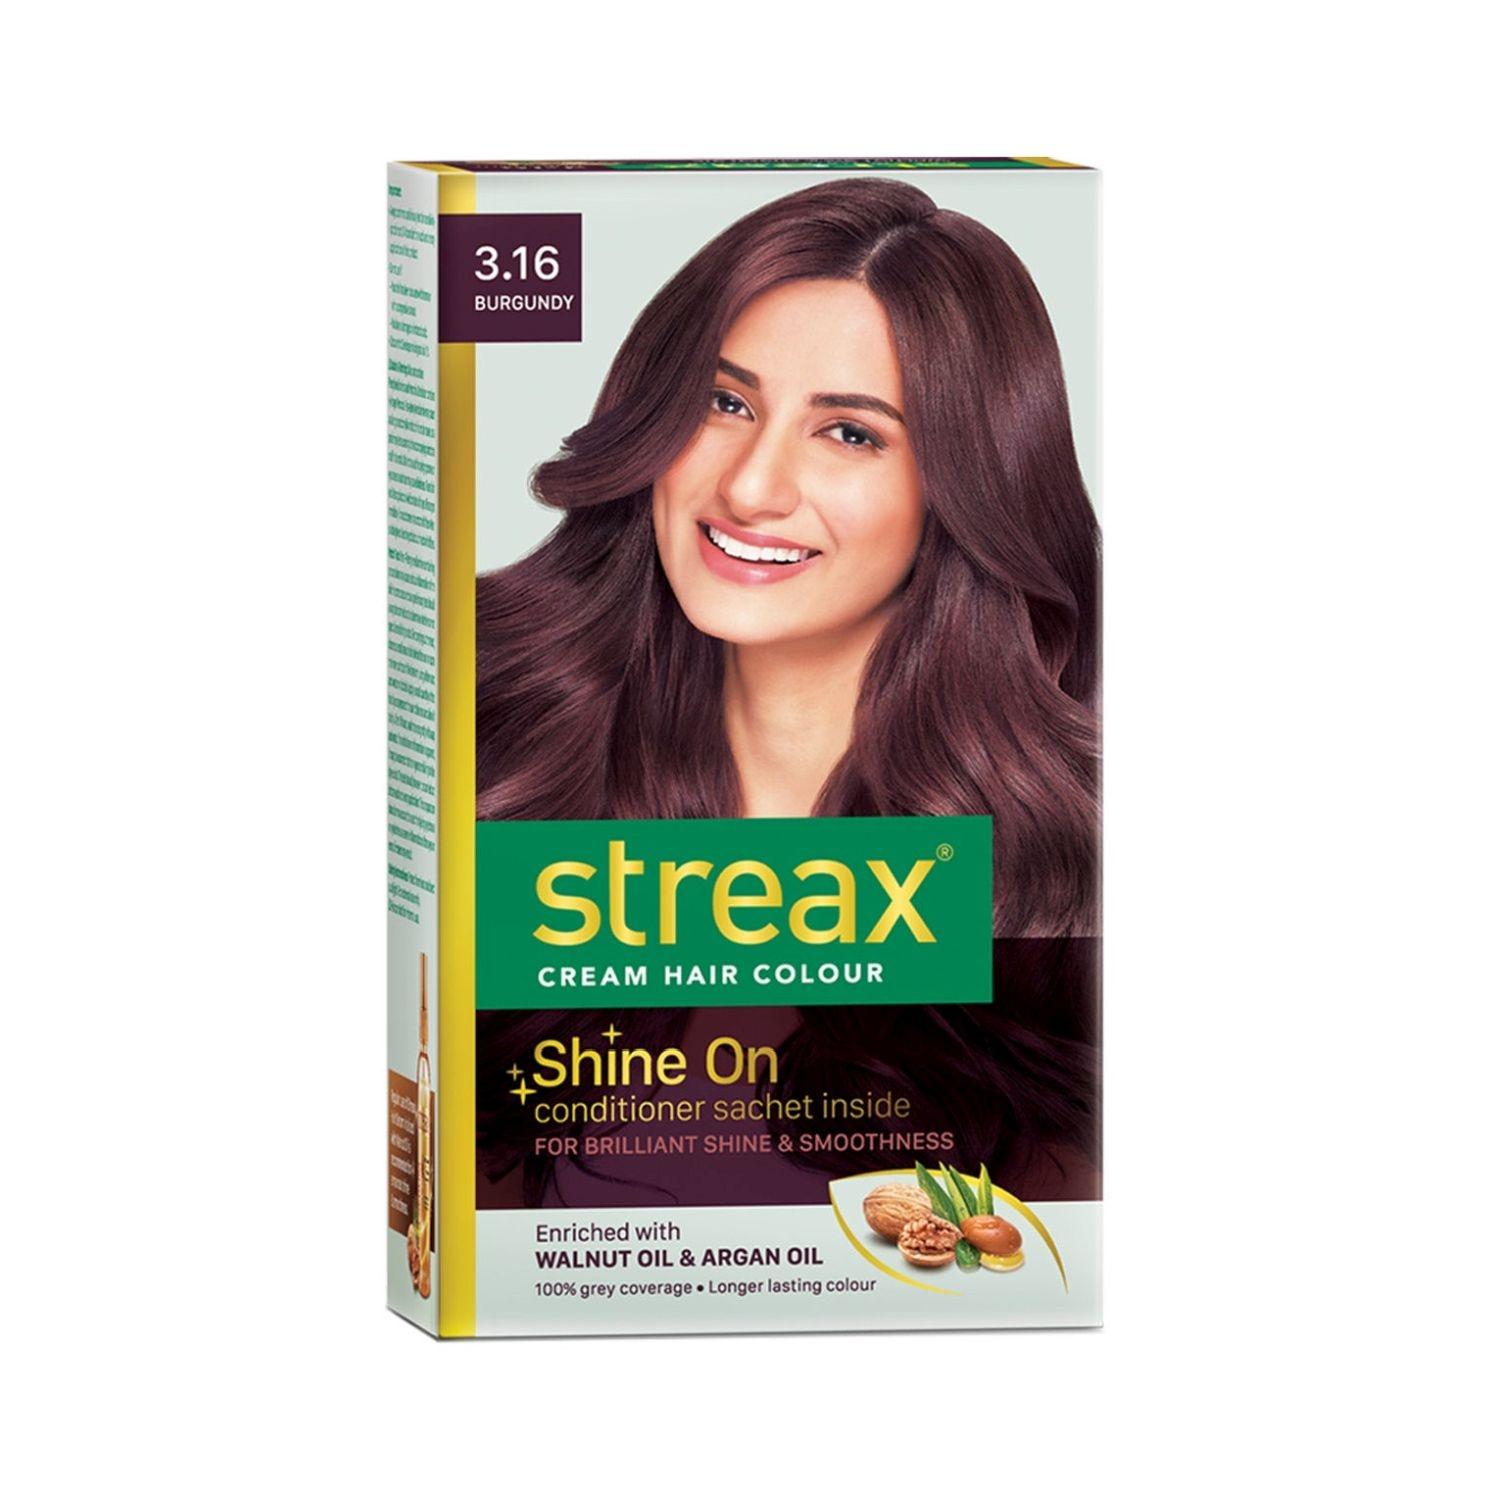 streax hair colour - 3.16 burgundy (35gm+25ml)